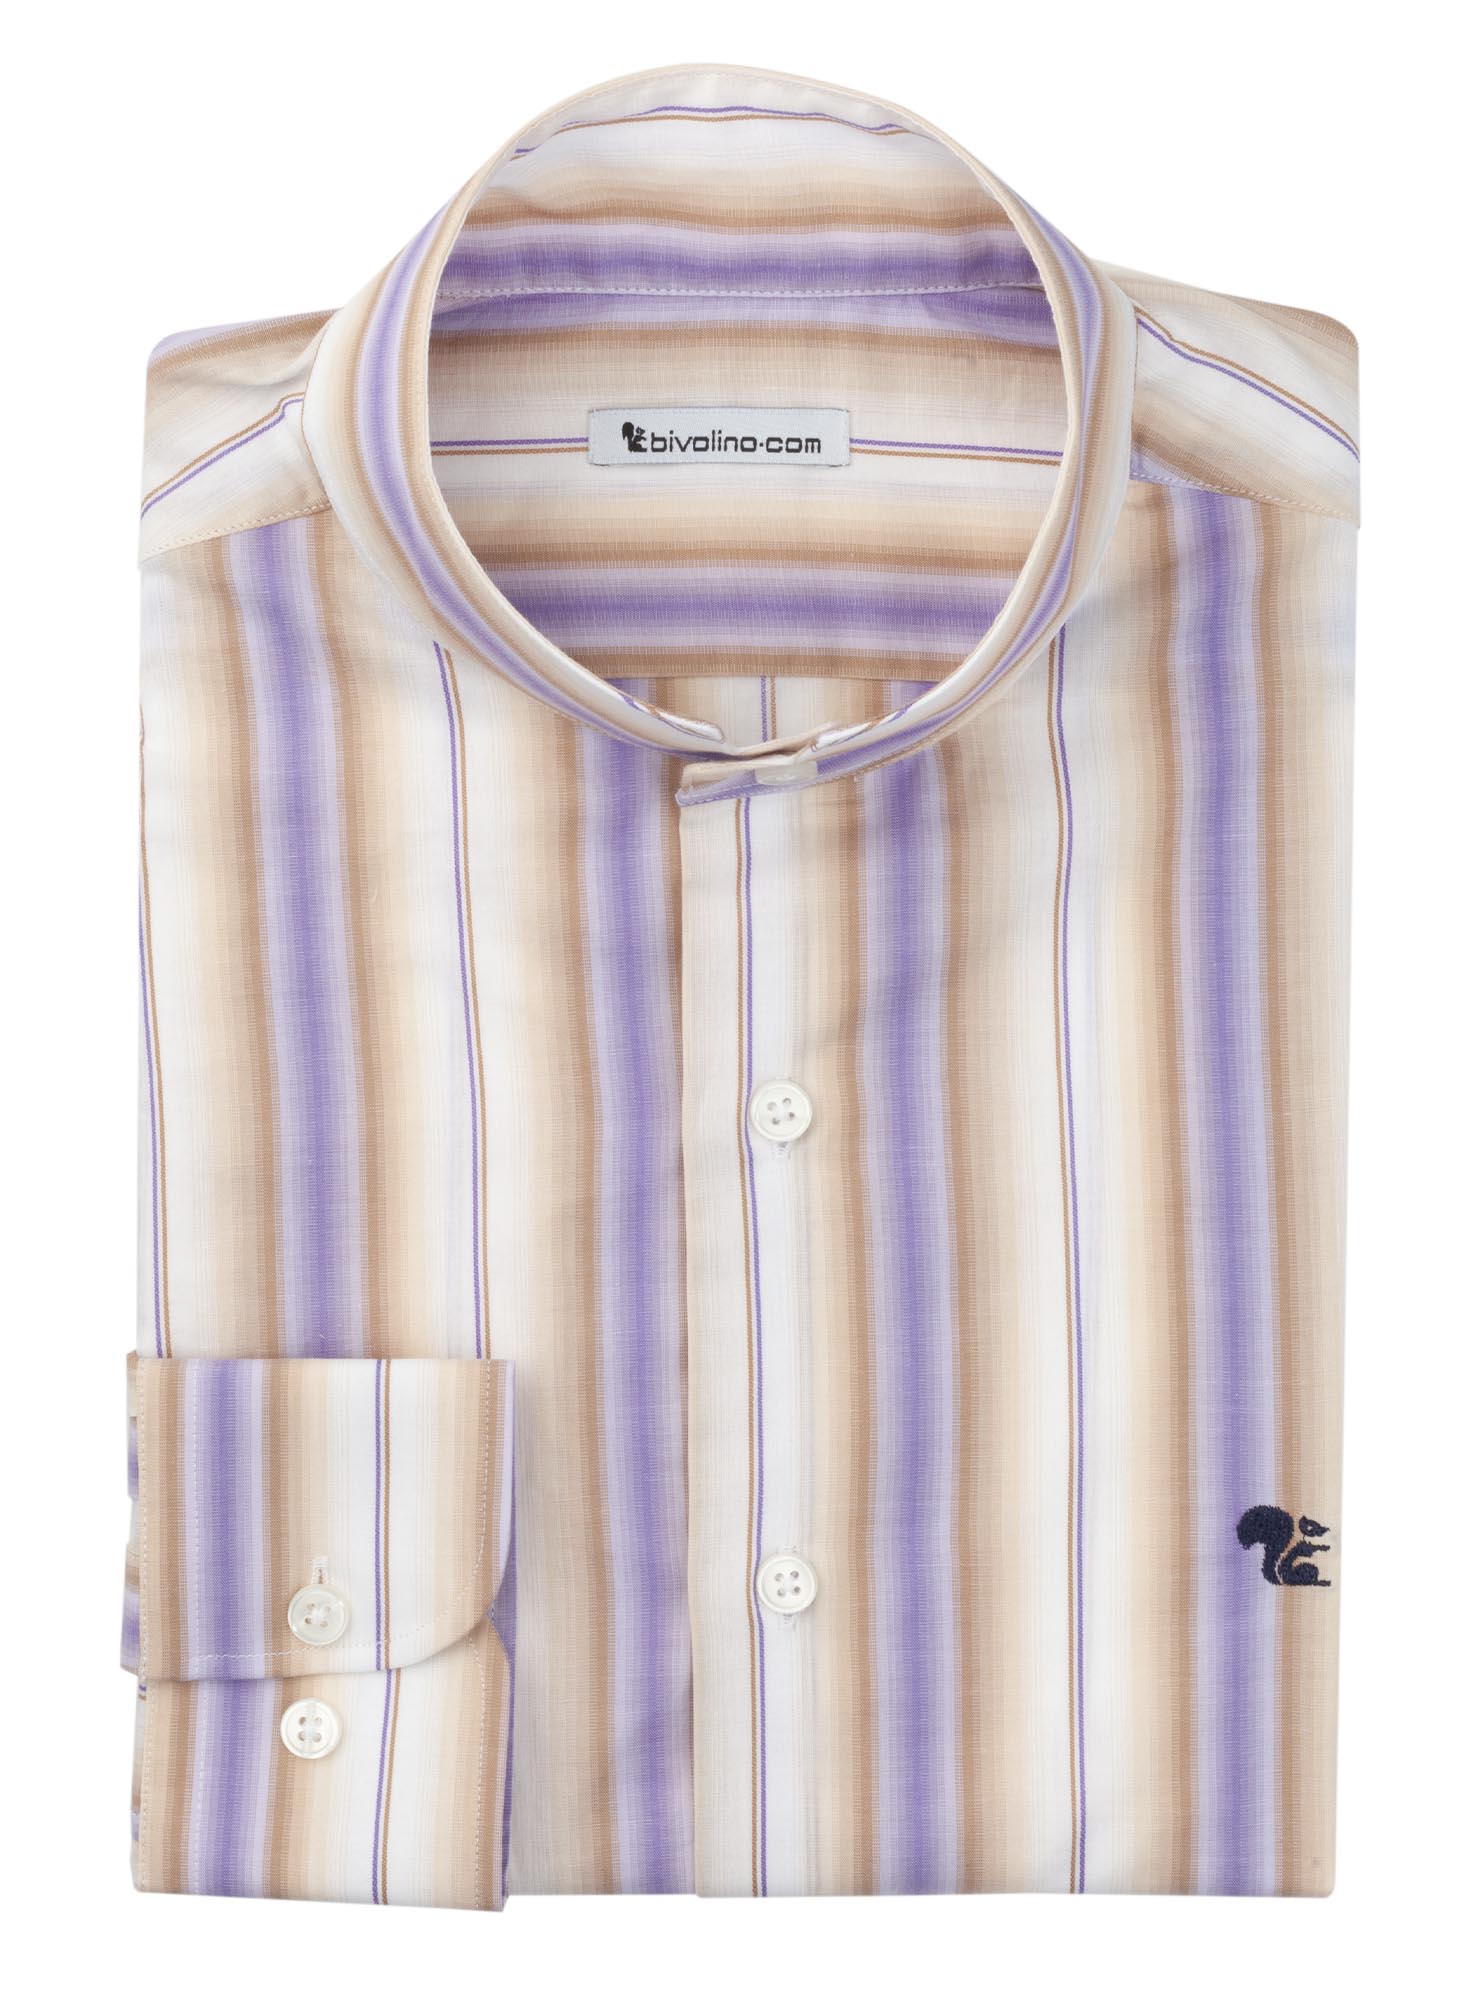 ARRONE - camisa de hombre con cuello nehru seersucker raya color crudo-lila - DUNA 1